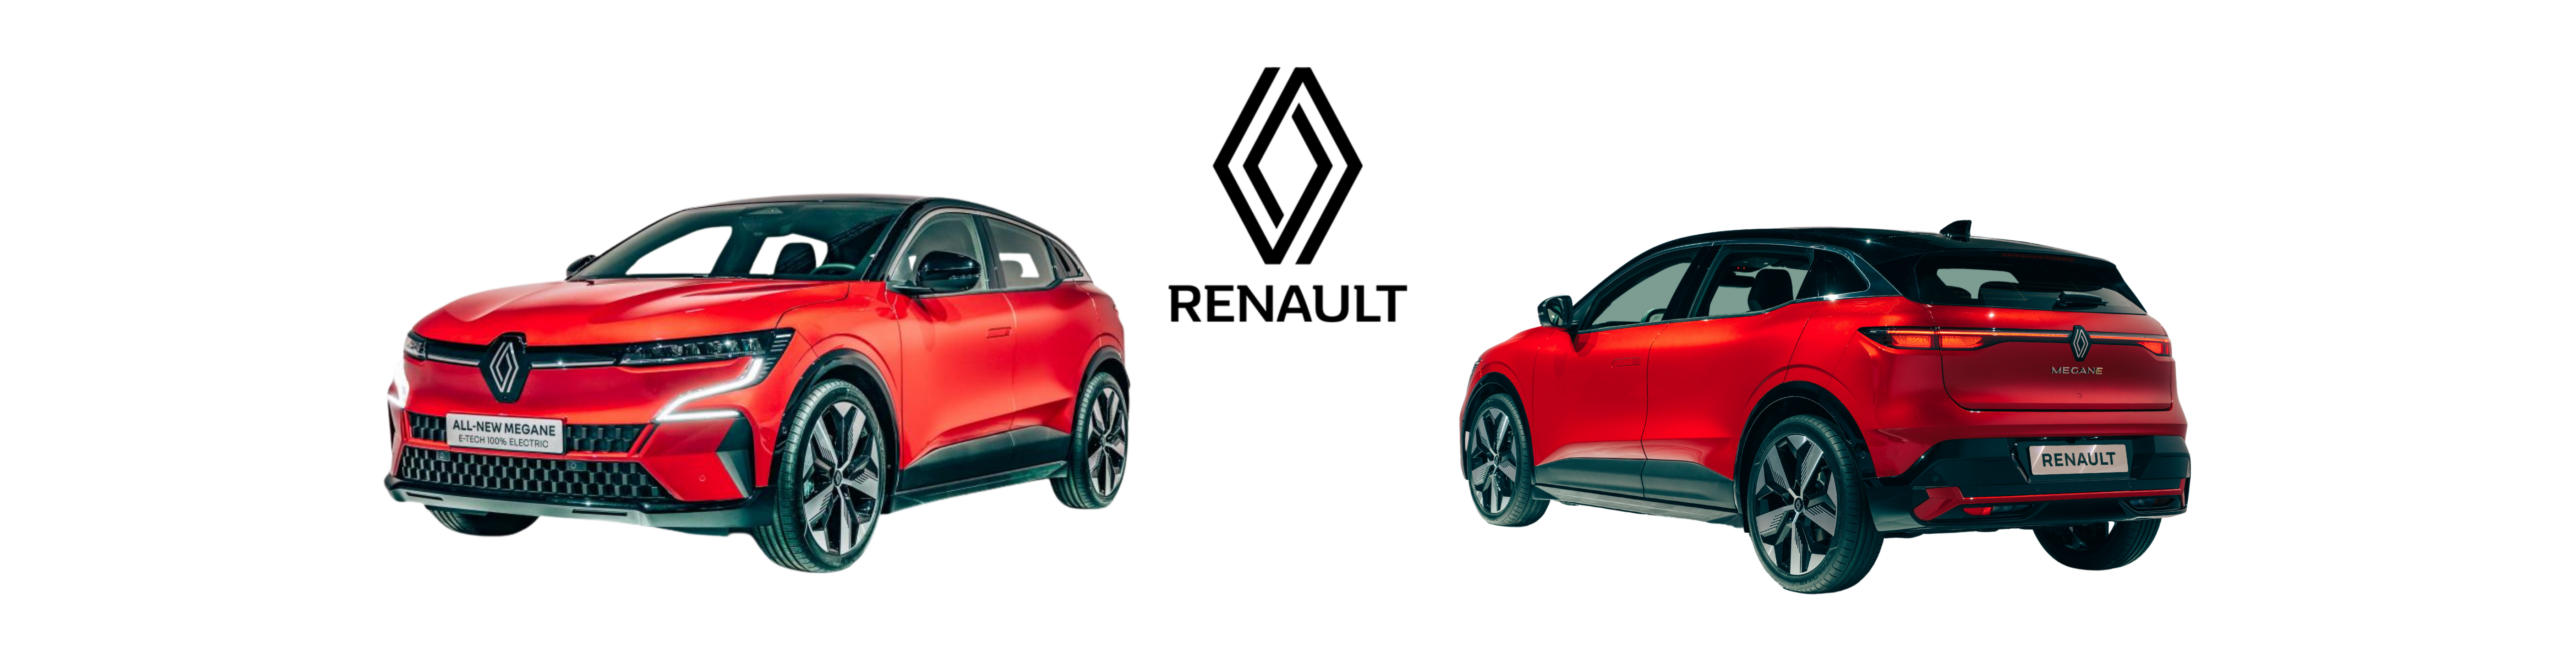 Nouveaux modèles de voitures Renault